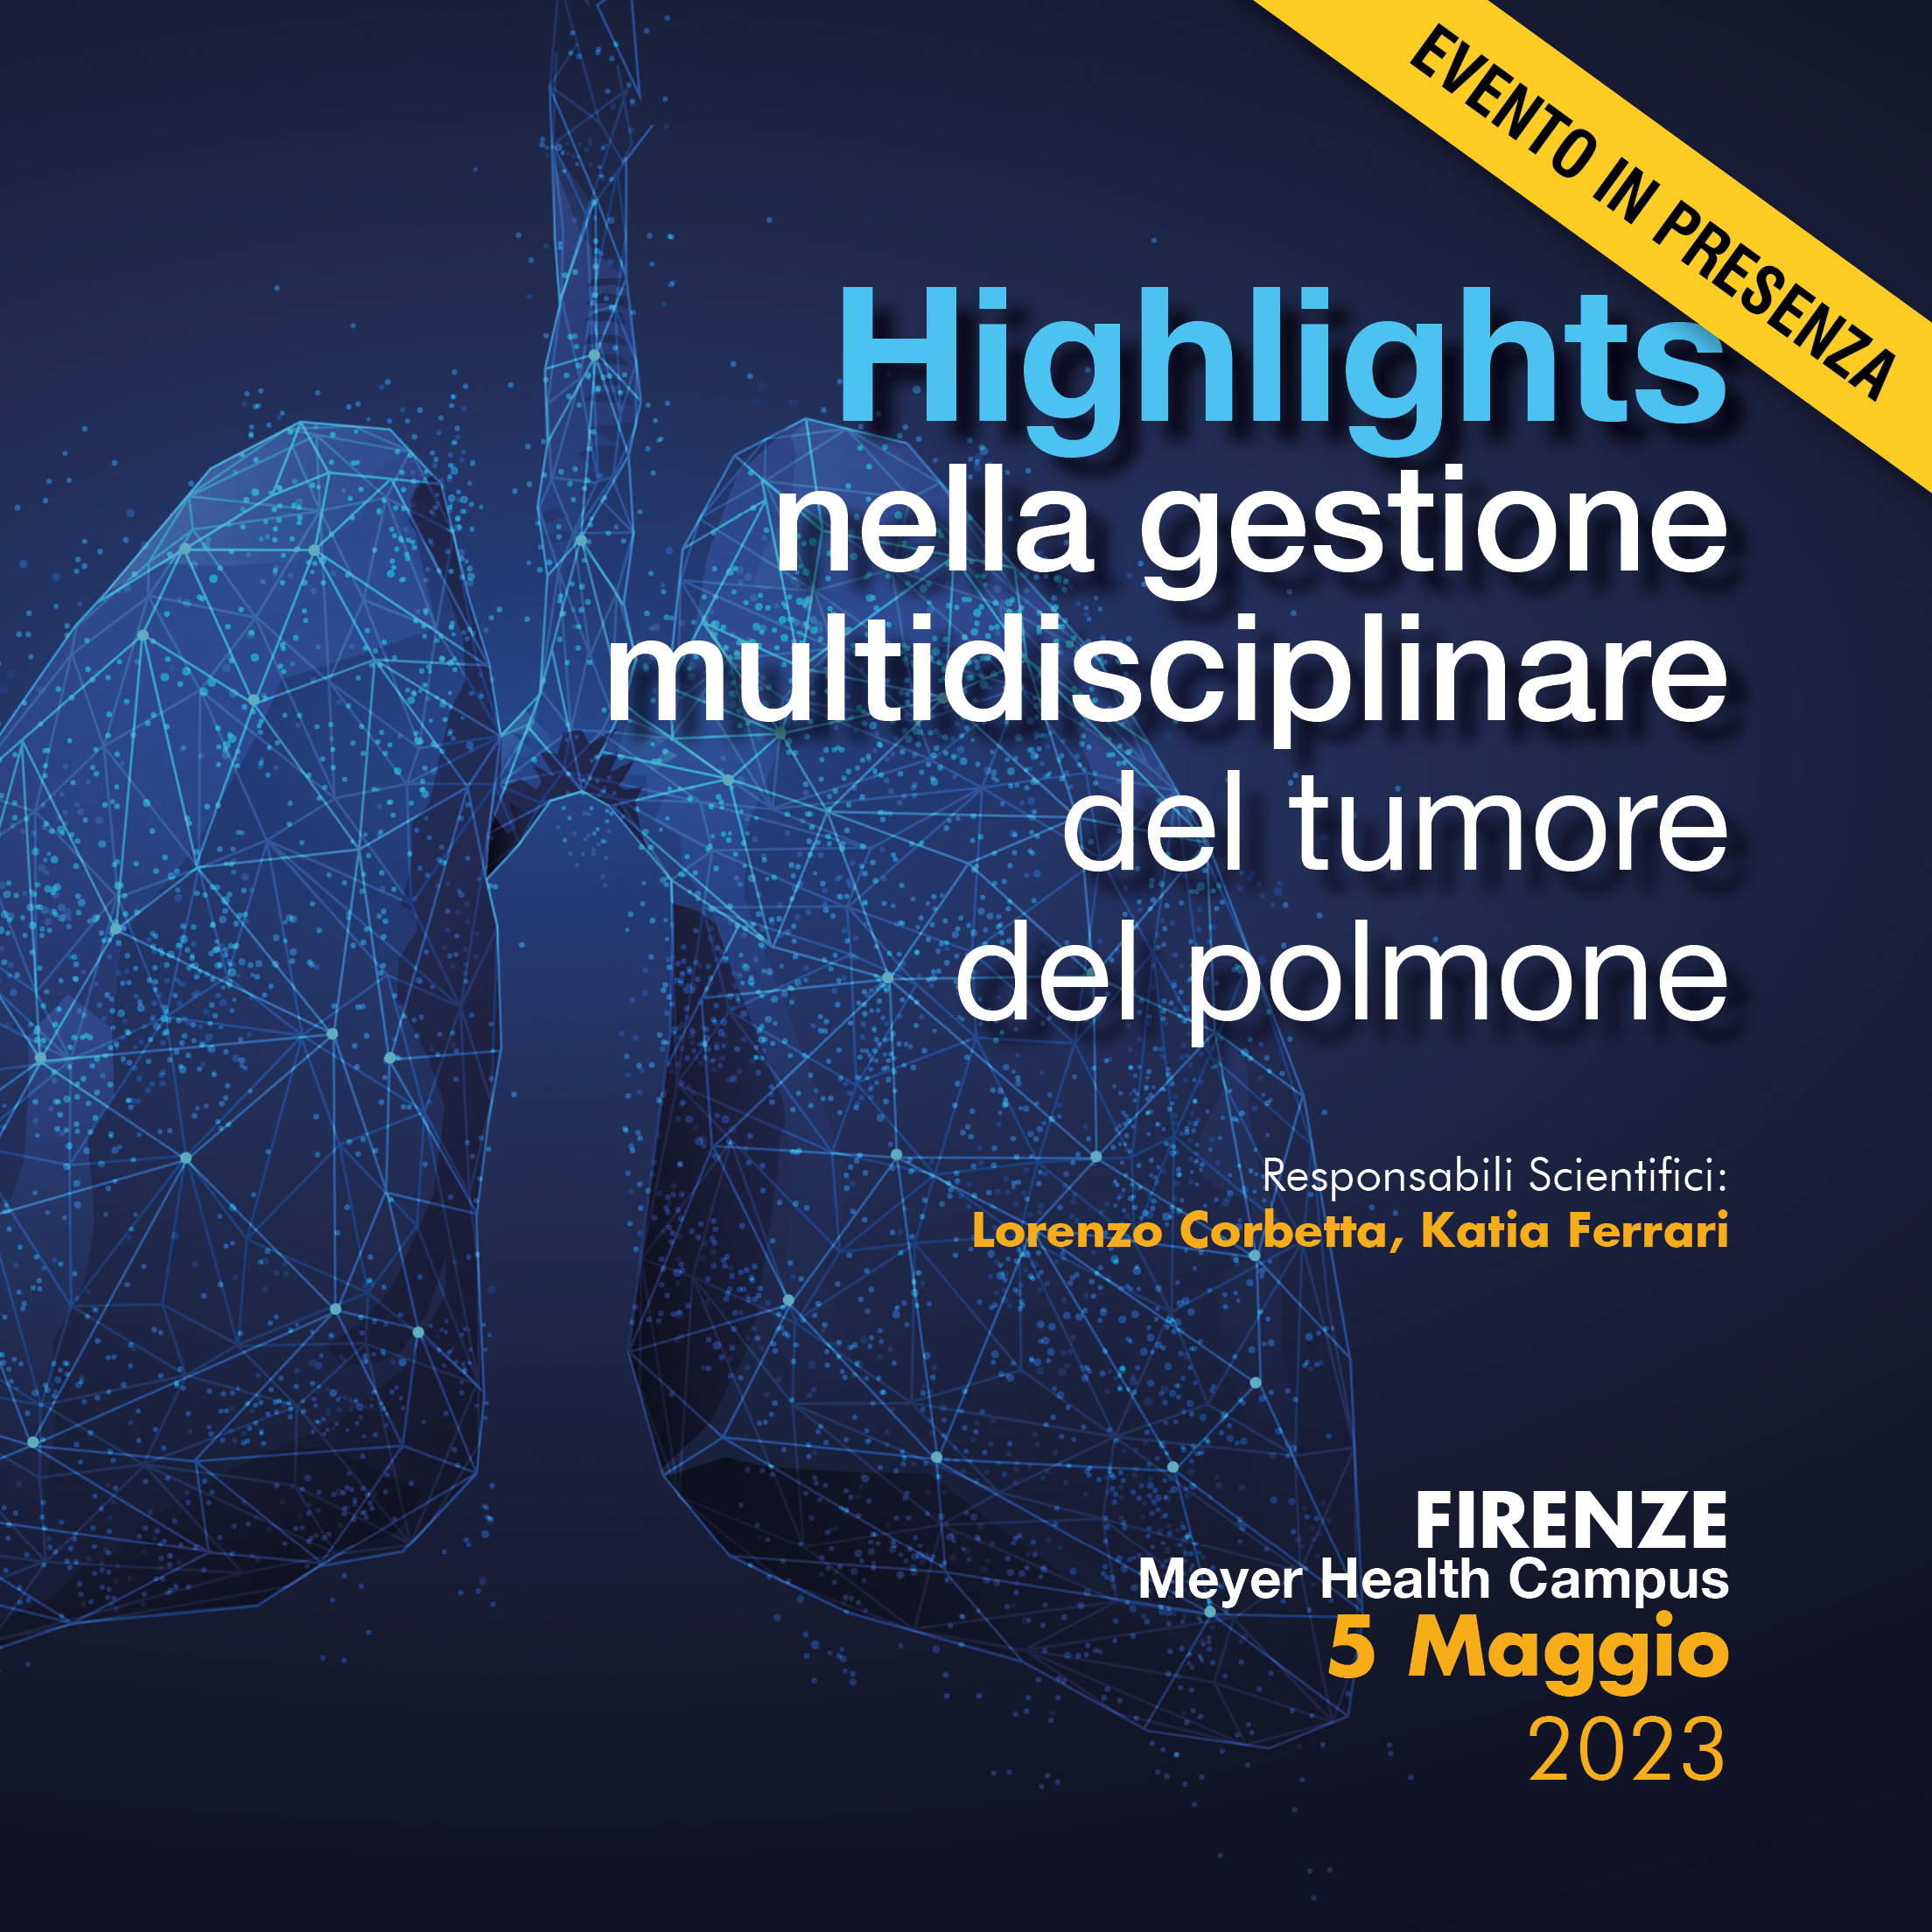 Highlights nella gestione multidisciplinare del tumore del polmone